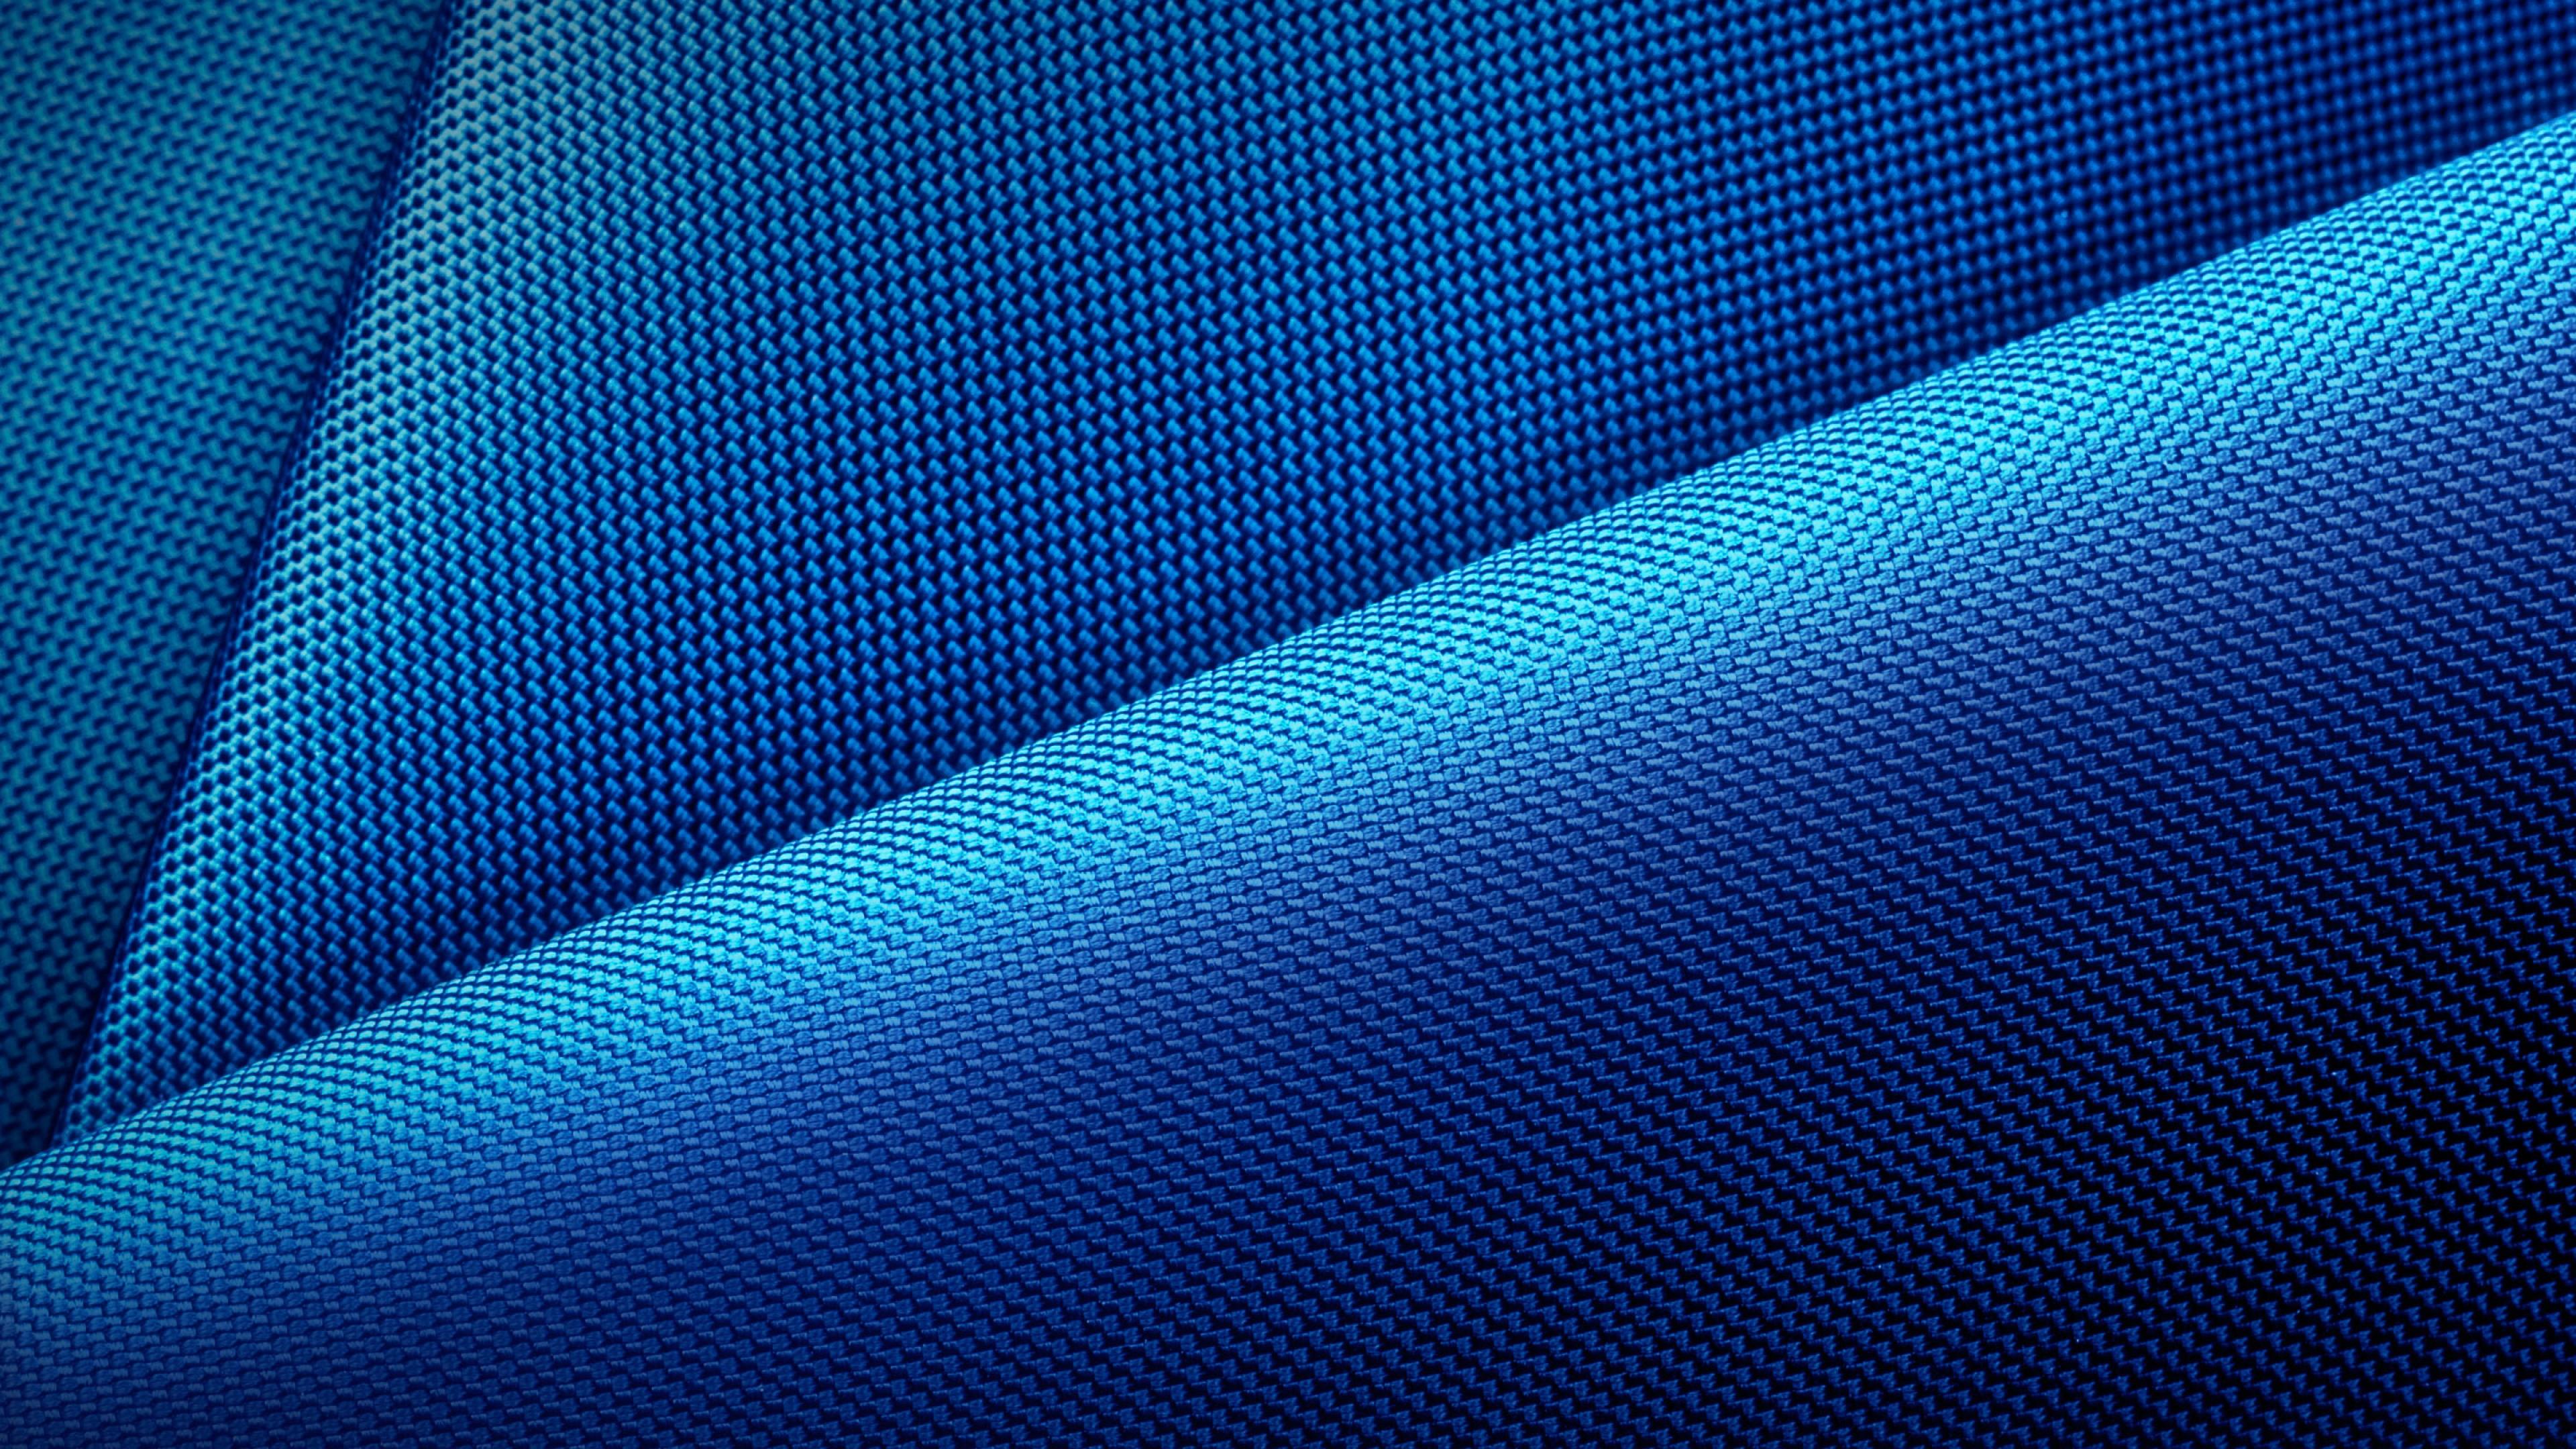 Blue 3D HD Wallpaper 1920x1080.com